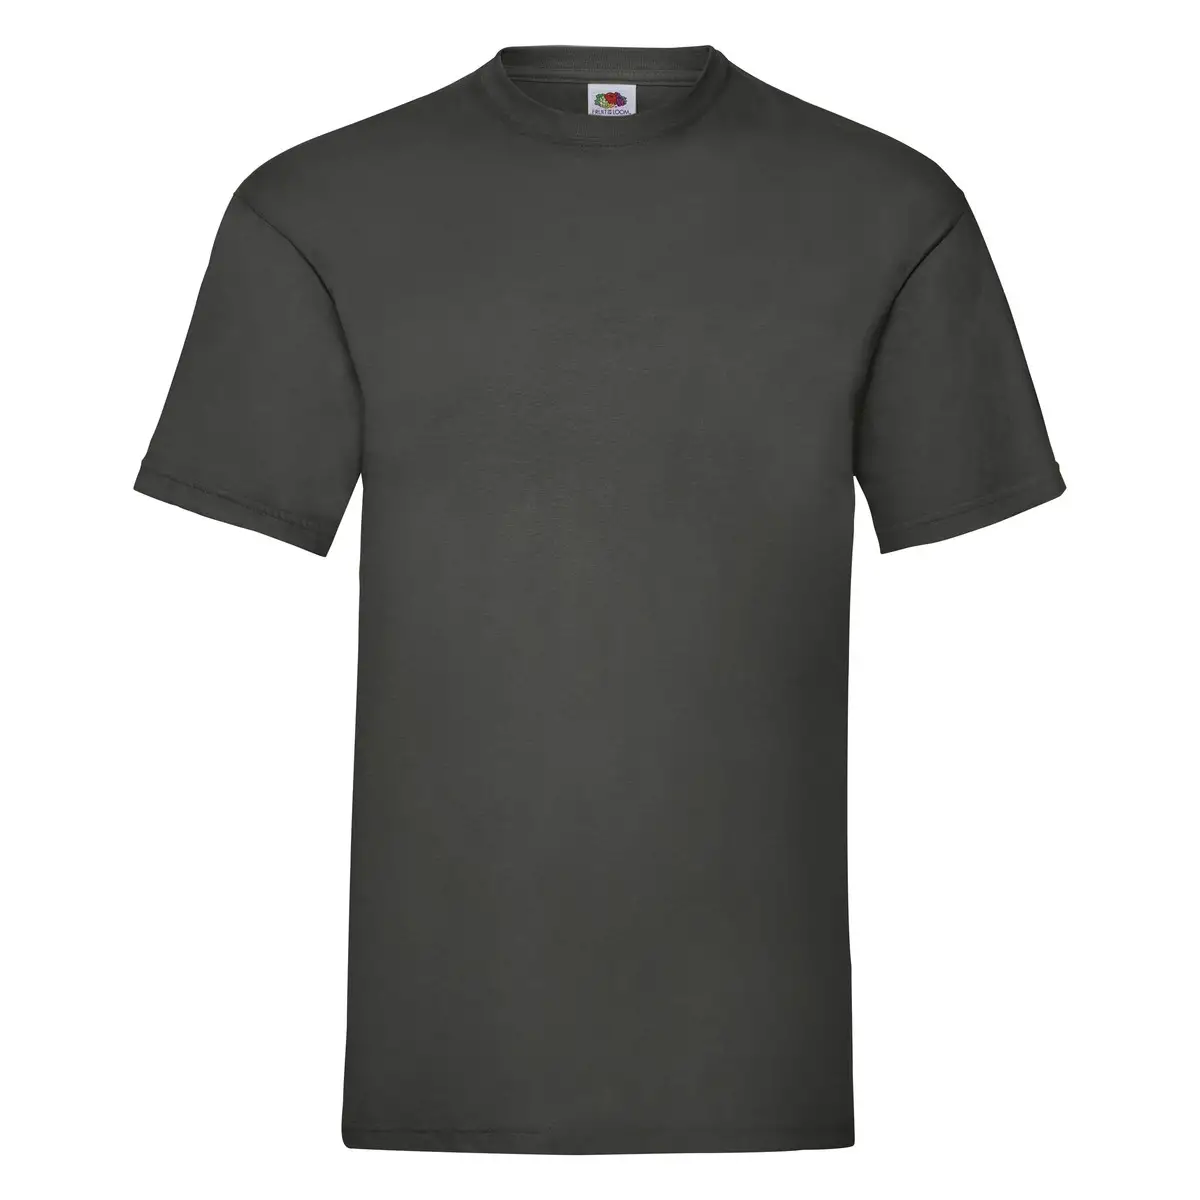 T-Shirt Manica Corta Uomo Cotone Belcoro Personalizzata - Fruit of the Loom